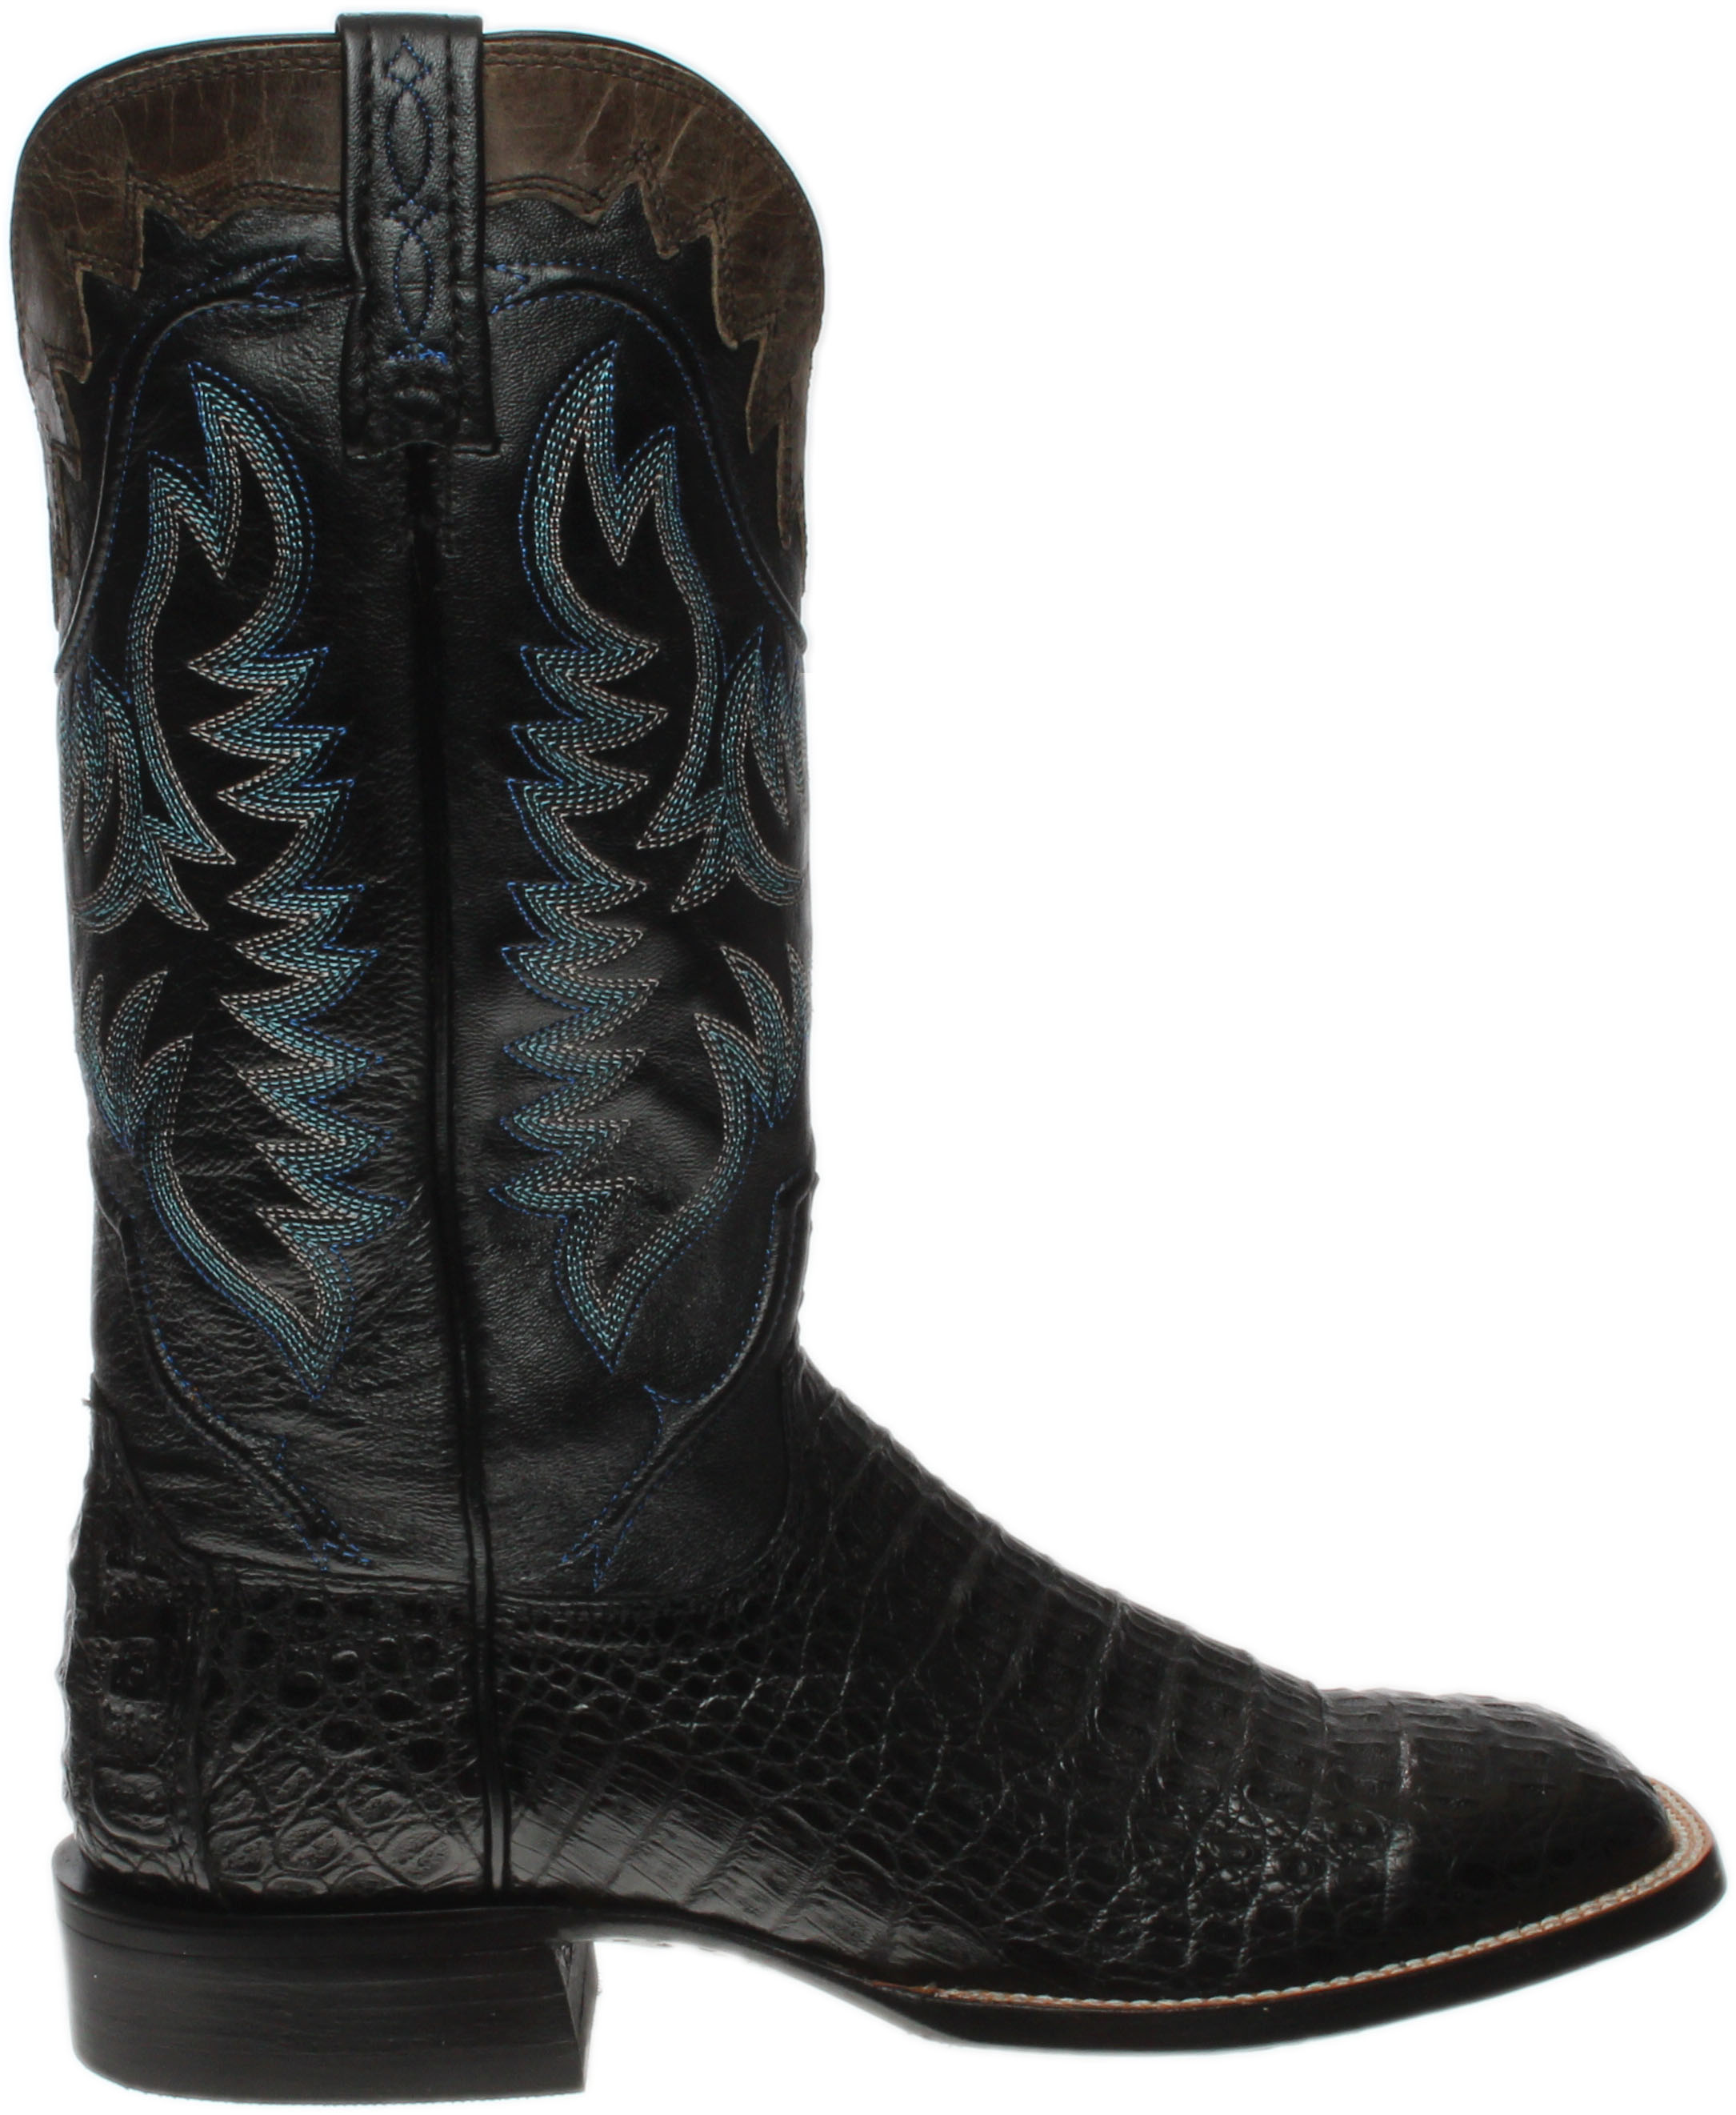 Lucchese Rhys Hornback Caiman Crocodile Leather Boots